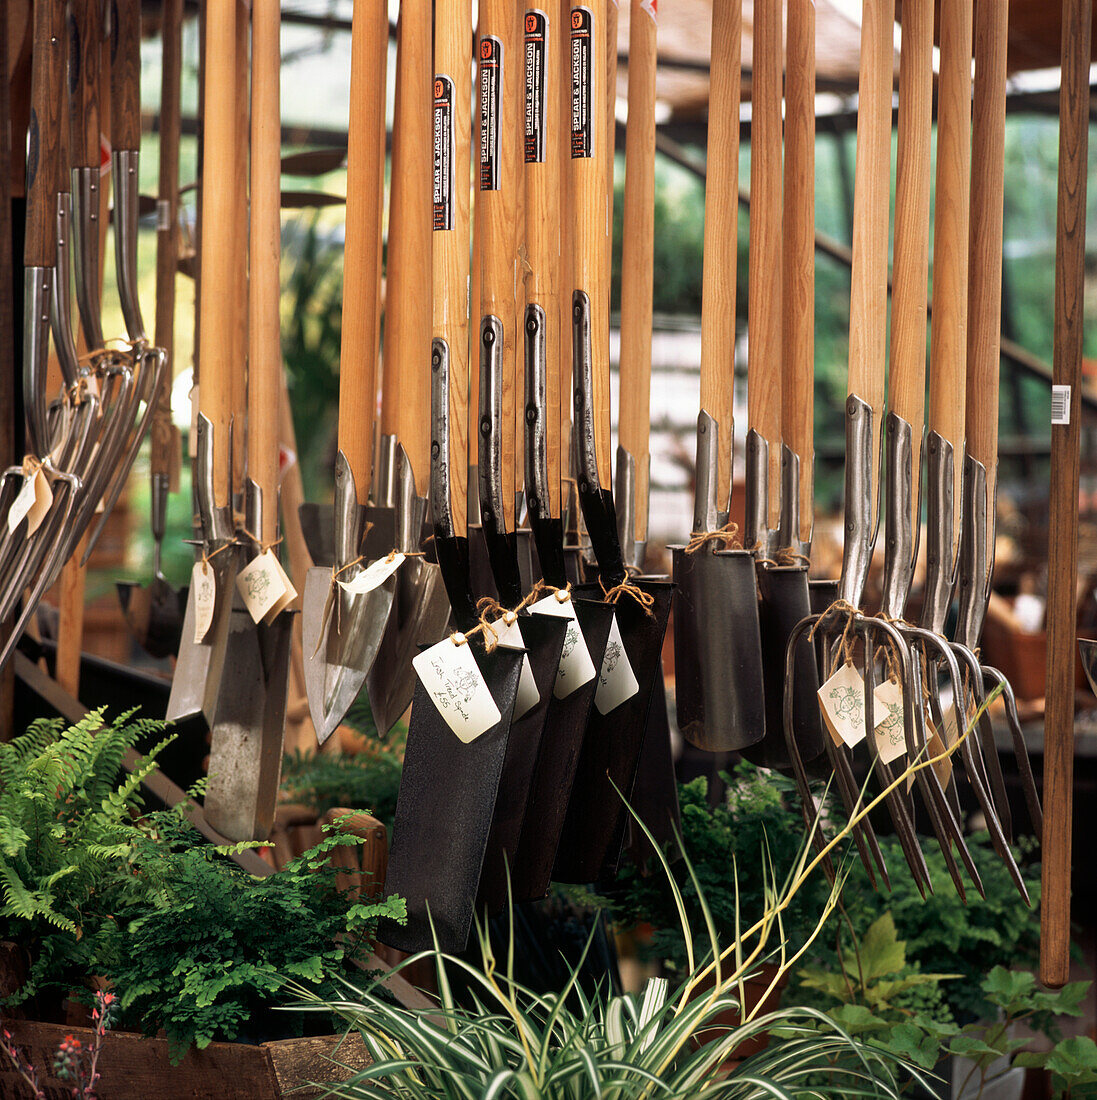 Garden tools hanging on display in garden center